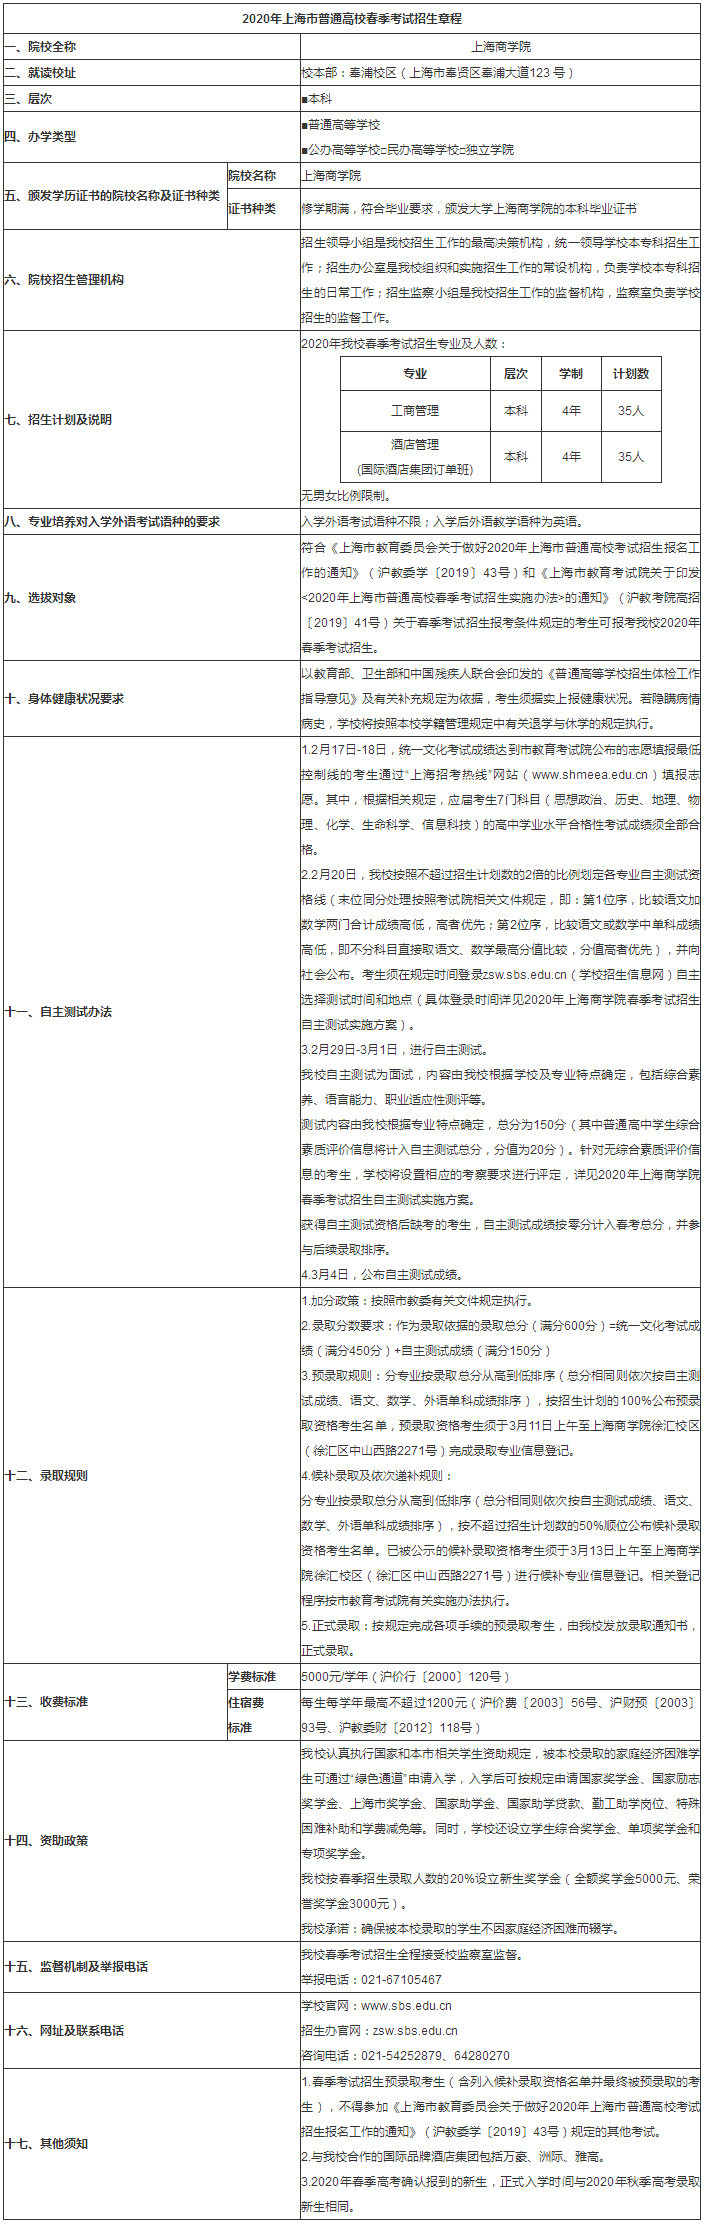 上海商学院2020年春季高考招生章程.jpg